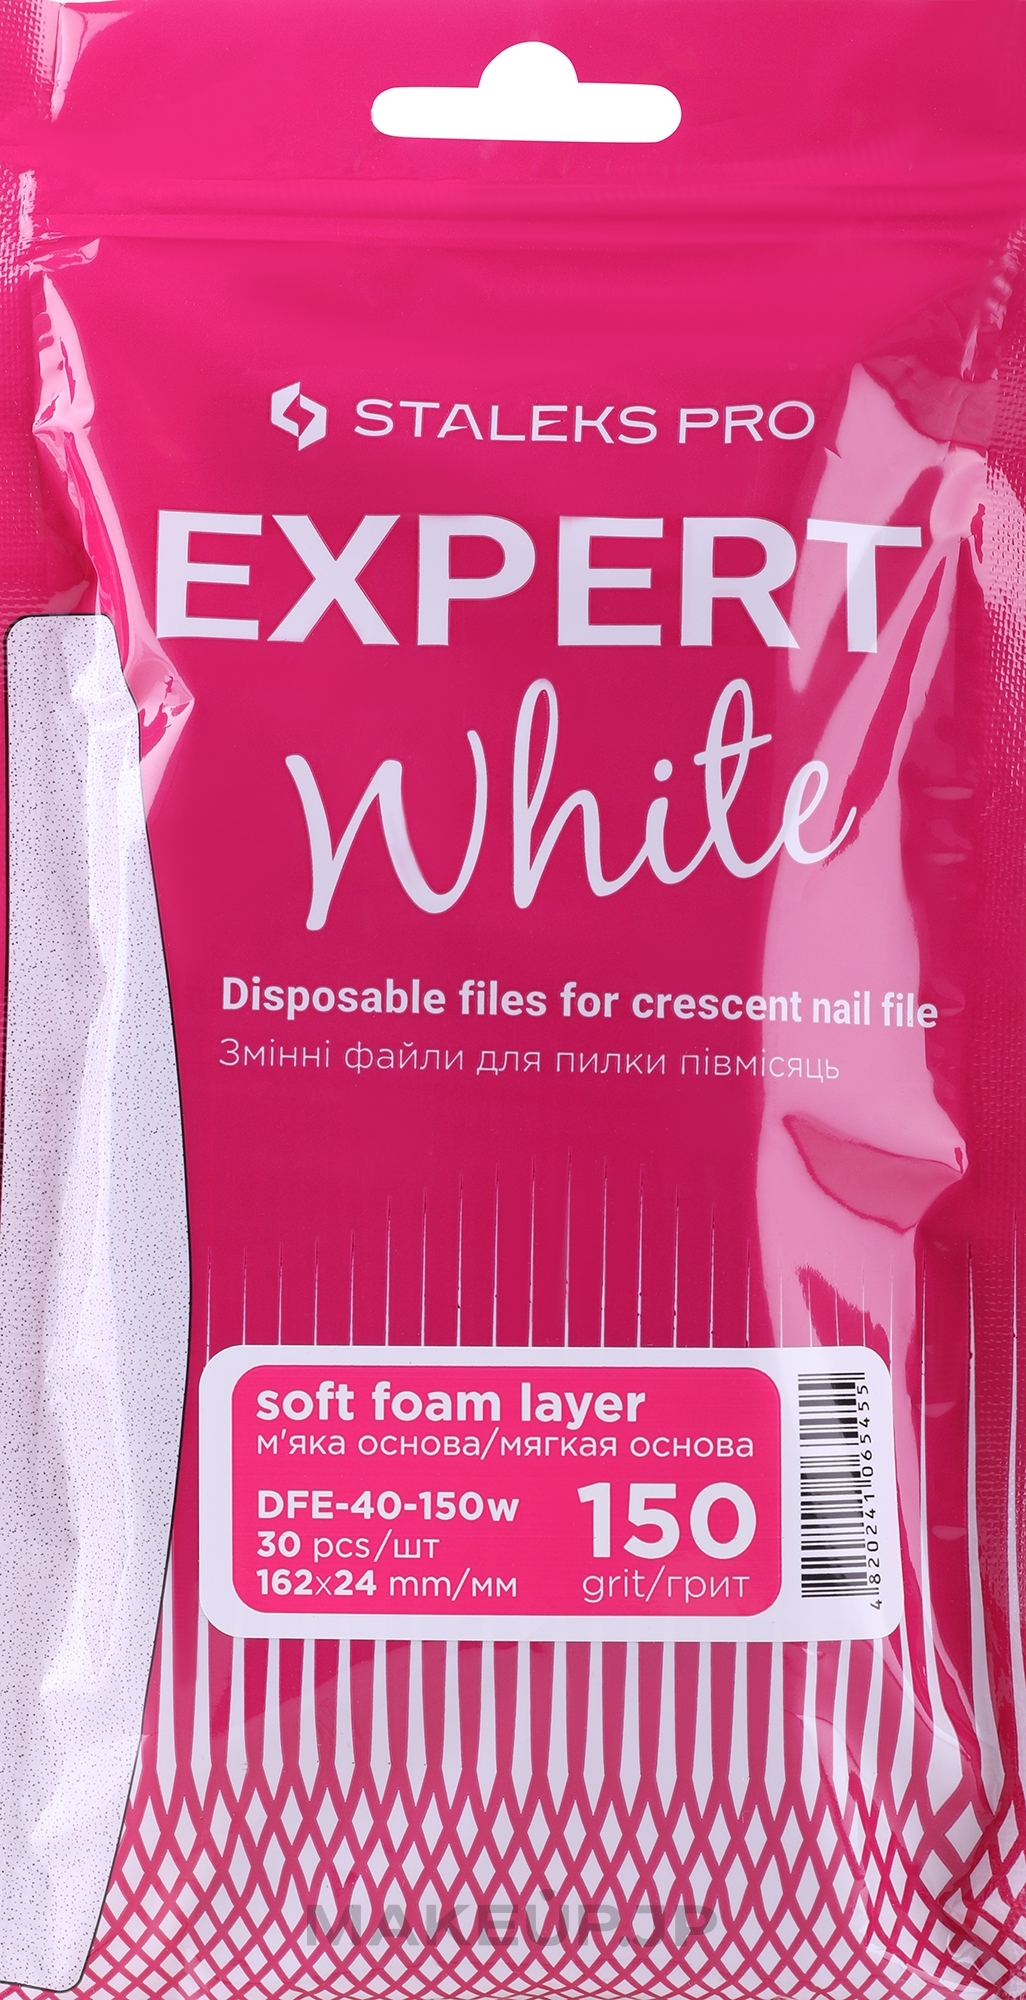 Soft-Based Half Moon Nail File Refill, white, 150 grit, 30 pcs. - Staleks Pro Expert 40 White (30 pcs) — photo 30 szt.